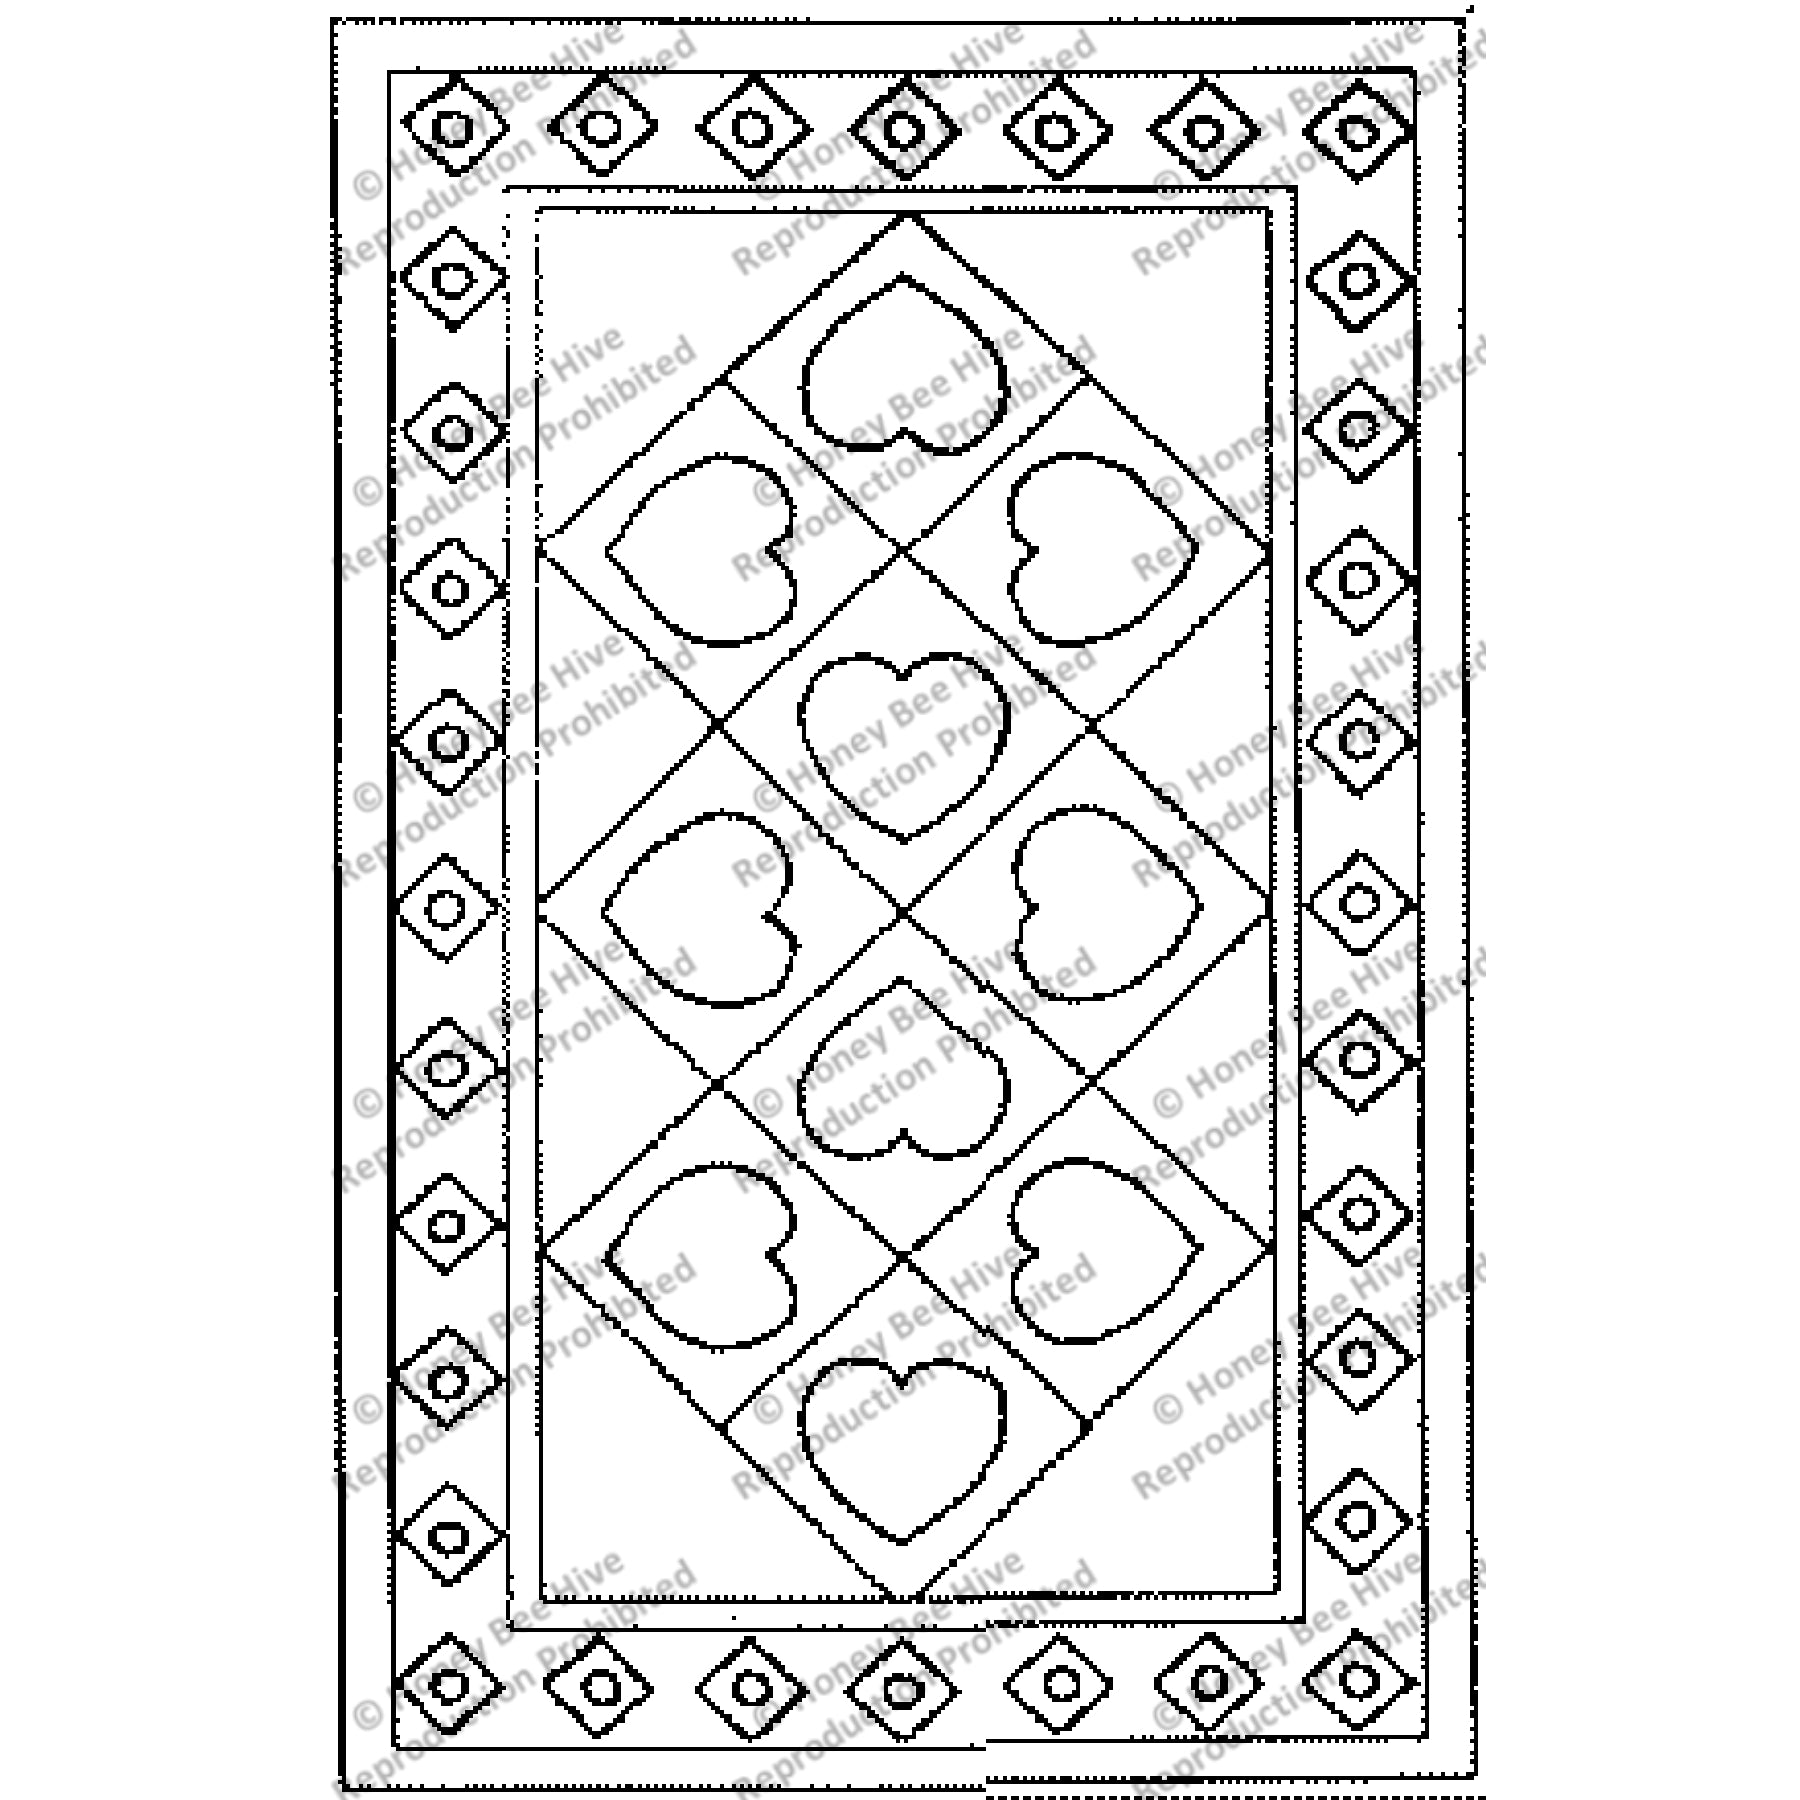 Ten Hearts, rug hooking pattern